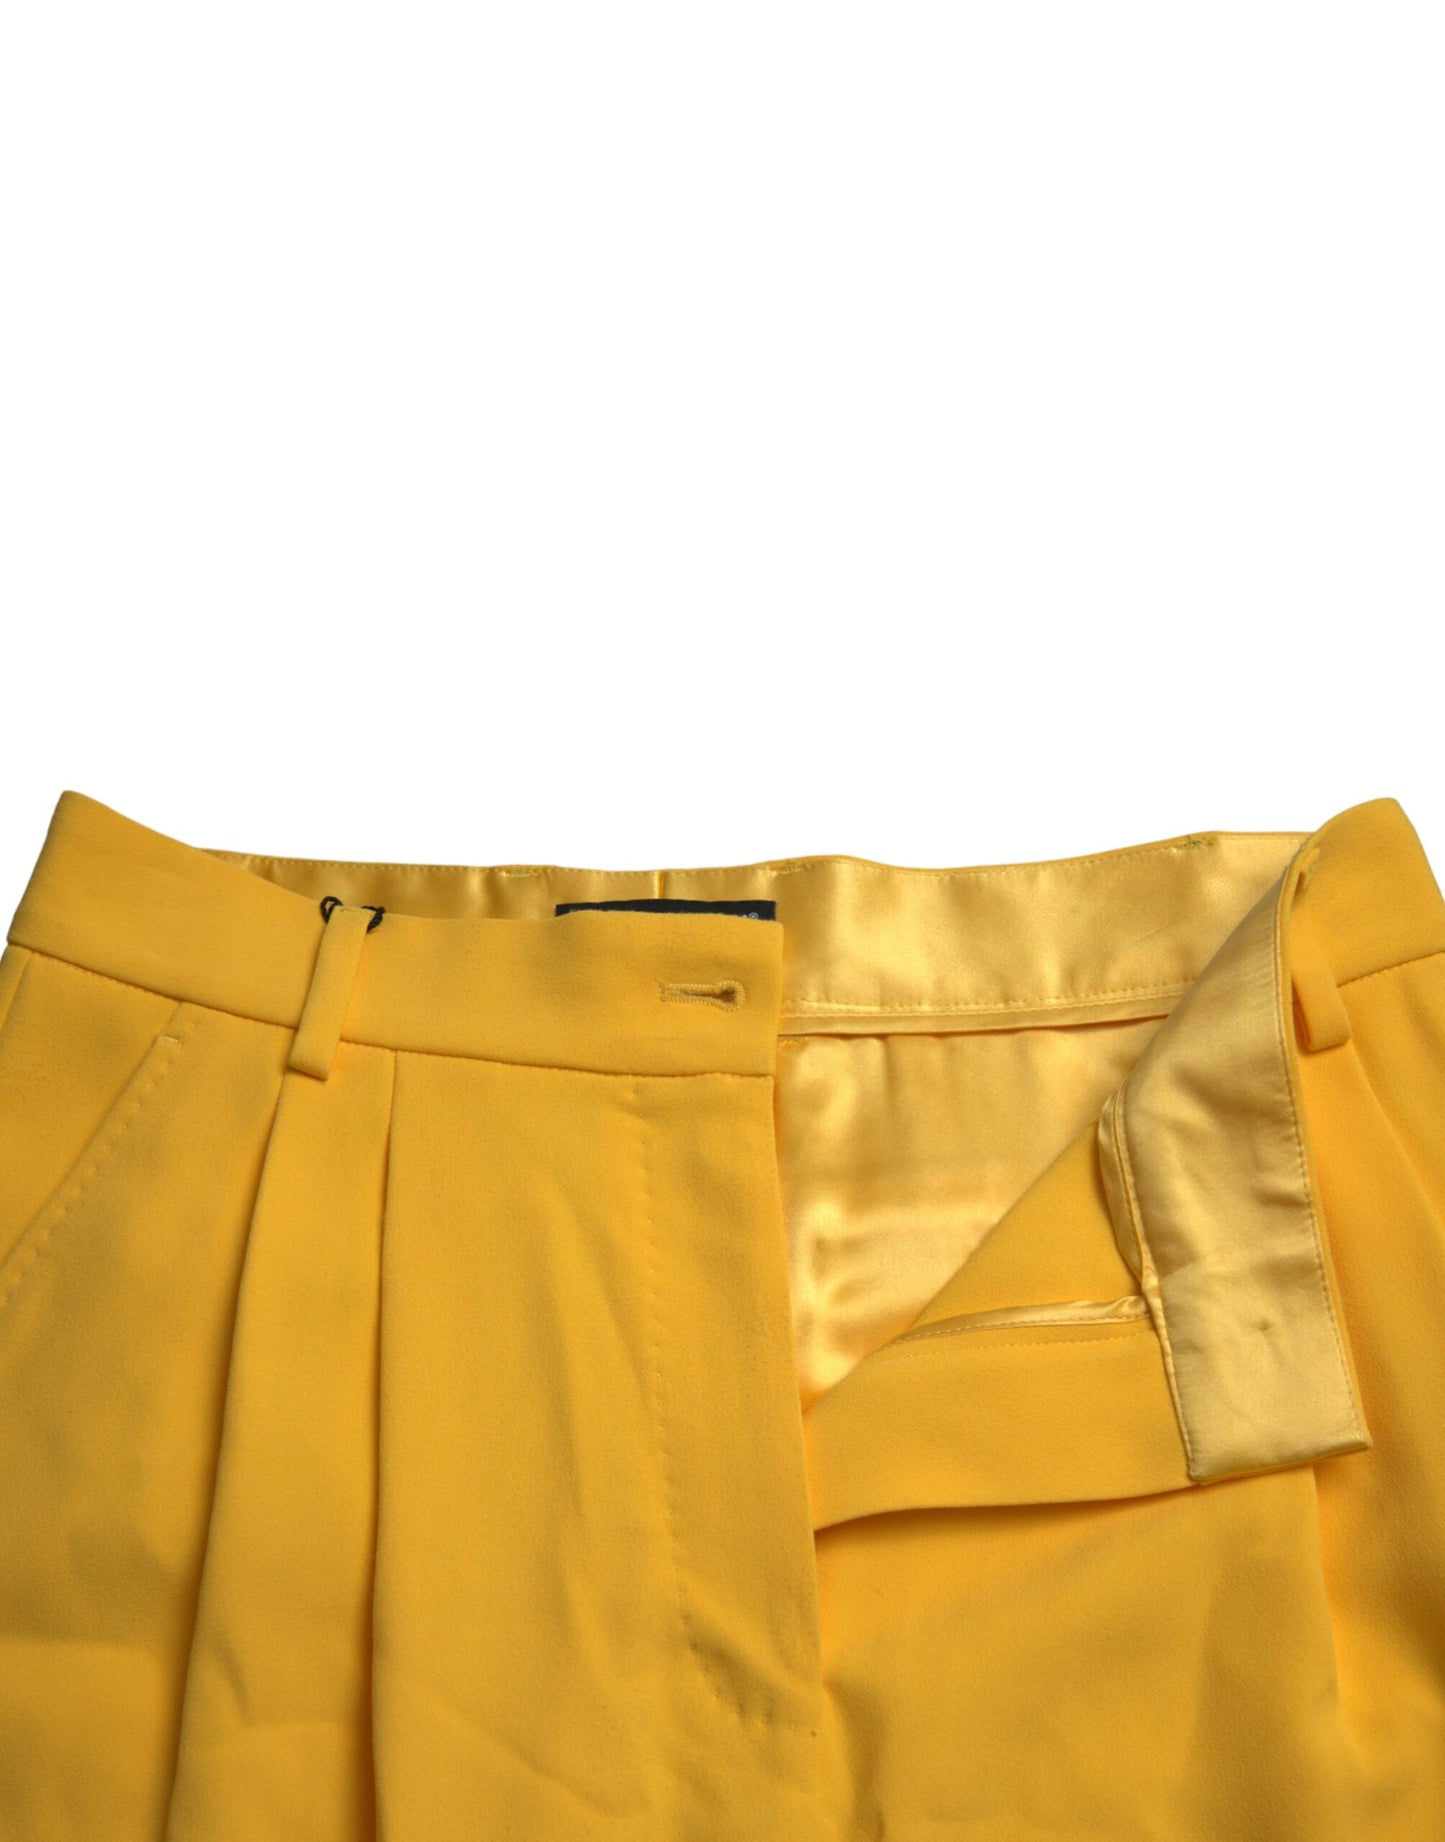 Dolce & Gabbana Elegant High Waist Bermuda Shorts in Sunny Yellow